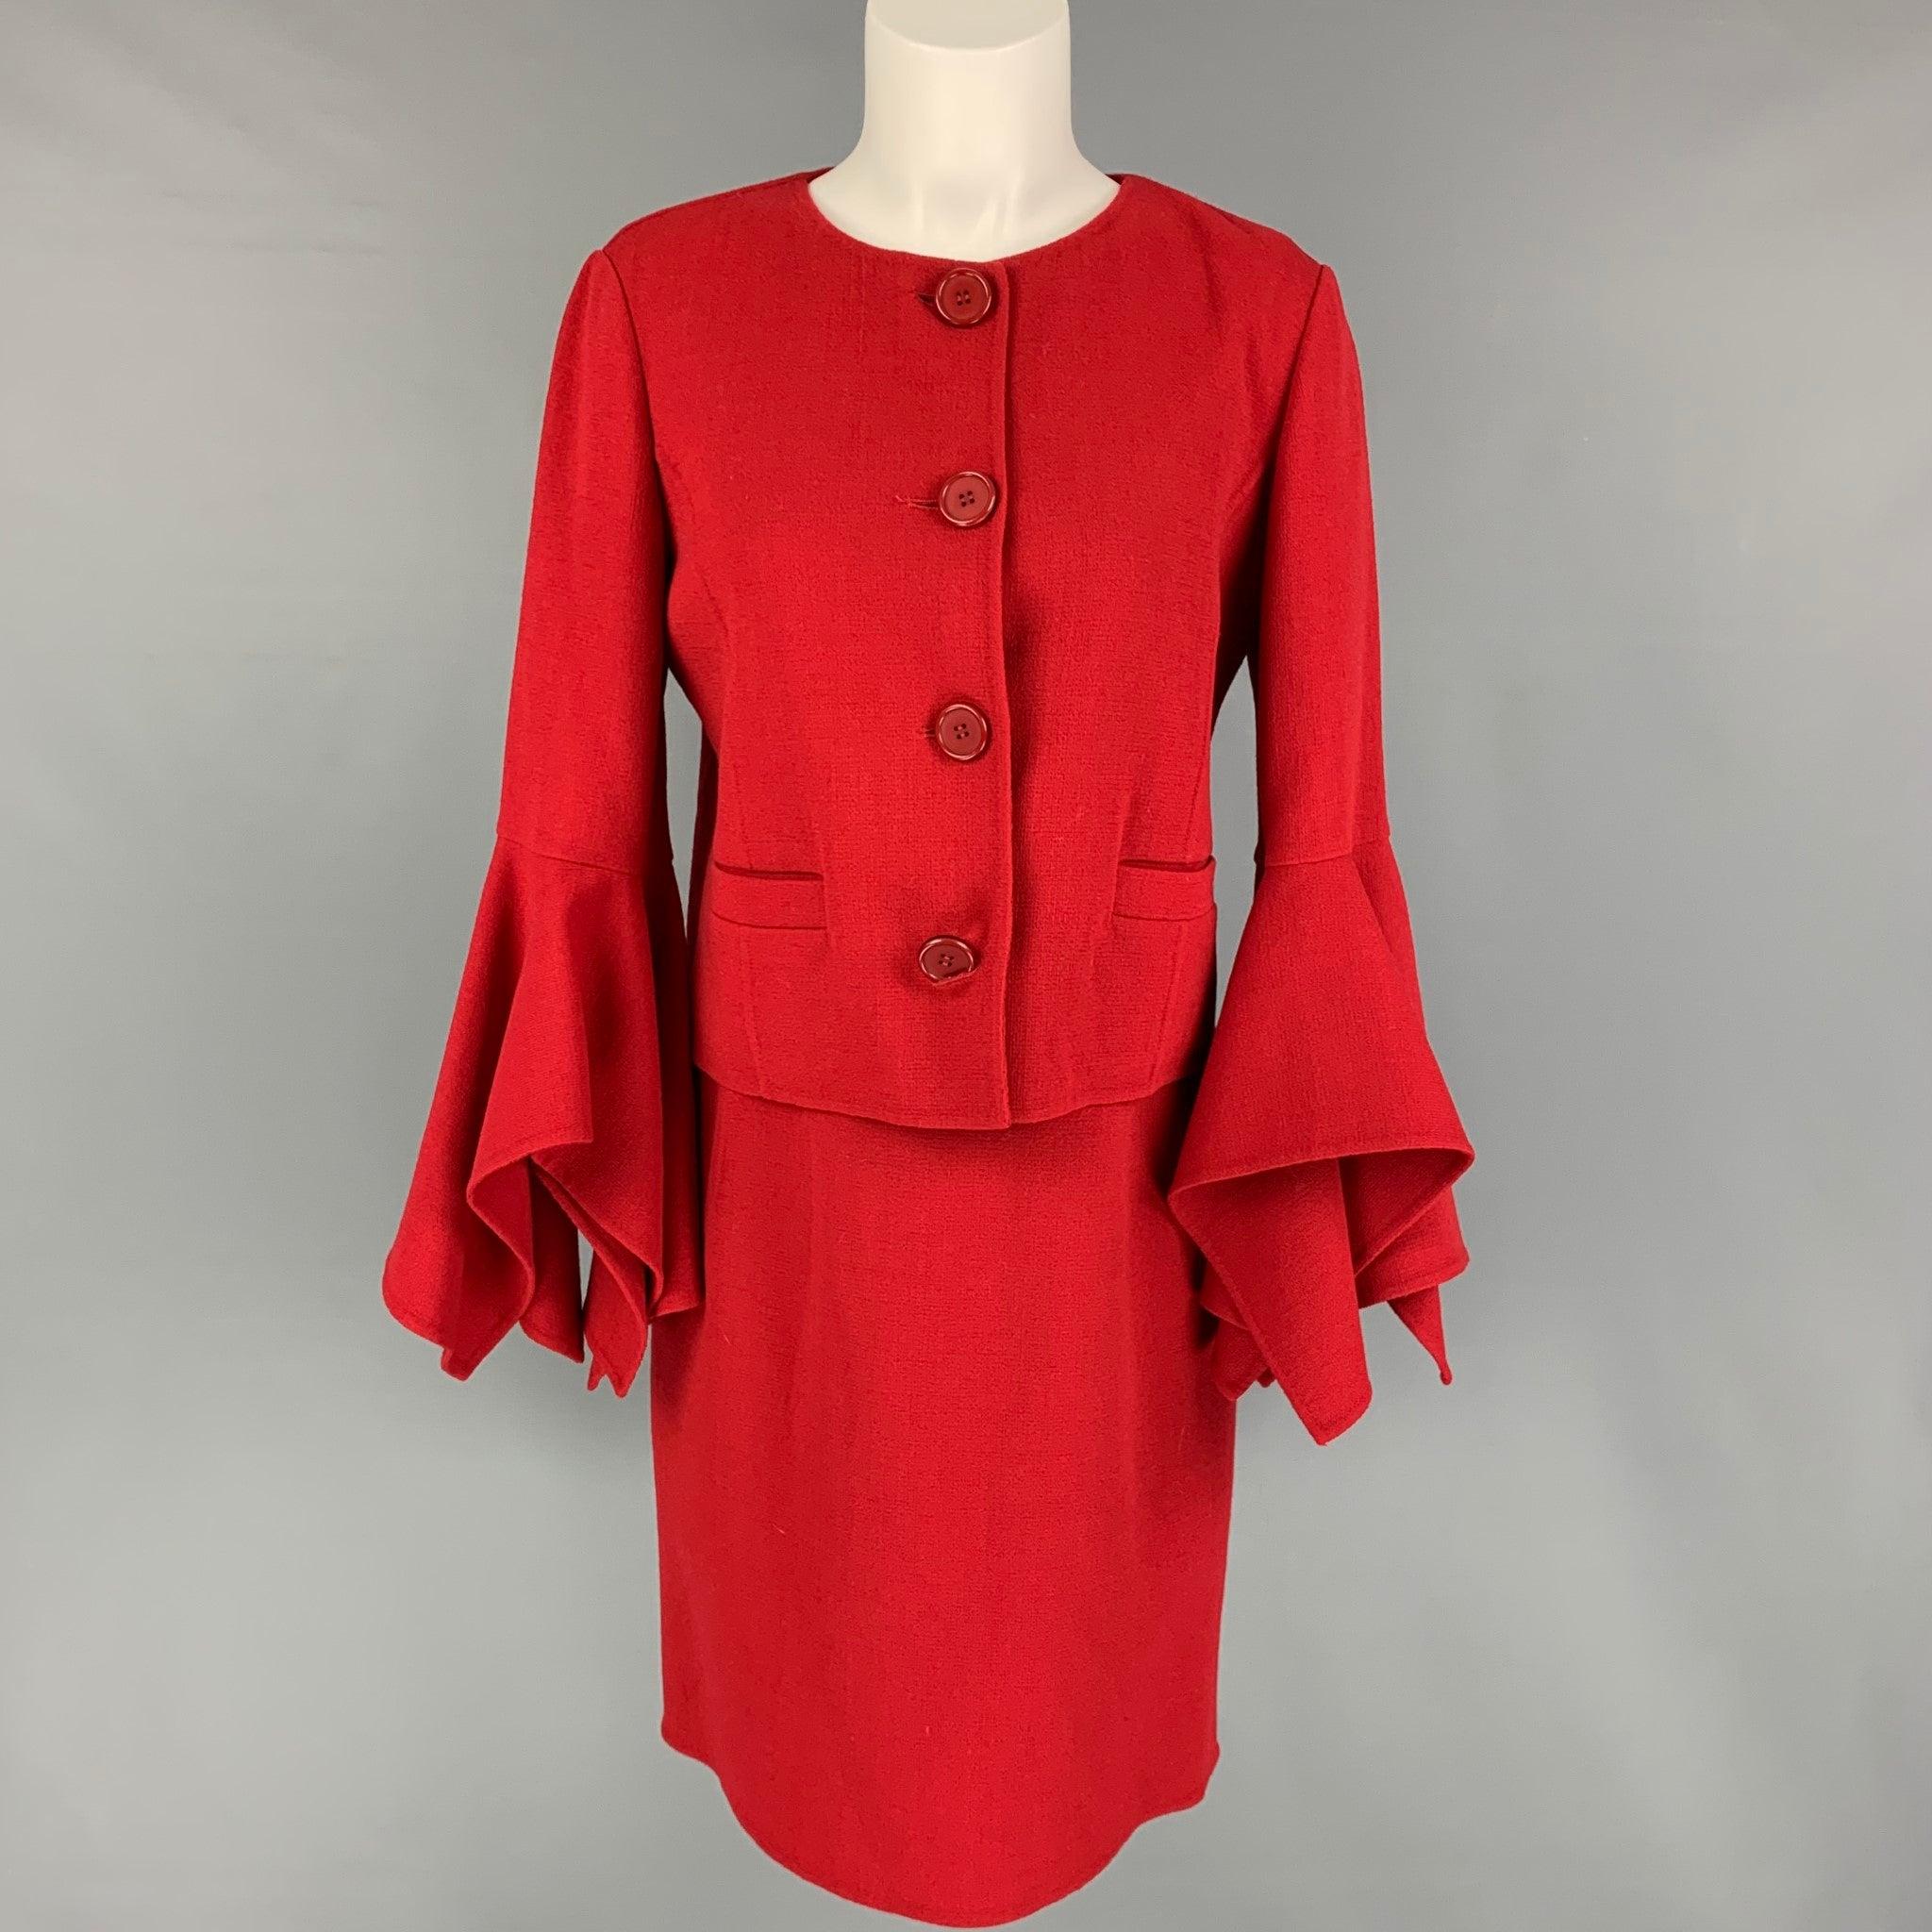 OSCAR DE LA RENTA Size 6 Red Virgin Wool Blend Shift Dress For Sale 2